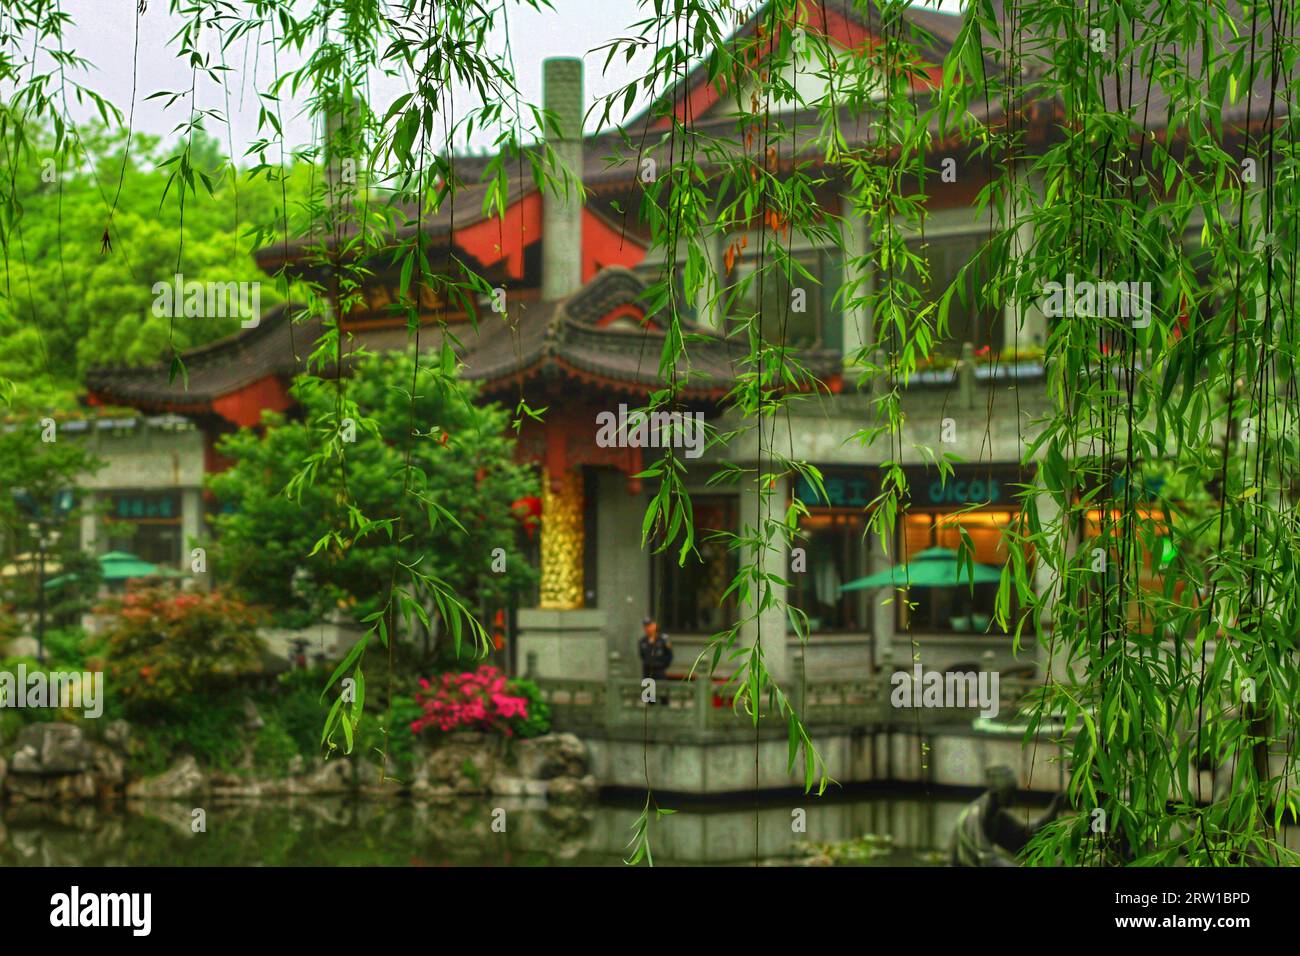 Cattura il fascino sereno di un fiume che si snoda attraverso case tradizionali e la squisita bellezza della natura nell'abbraccio della Cina. Foto Stock